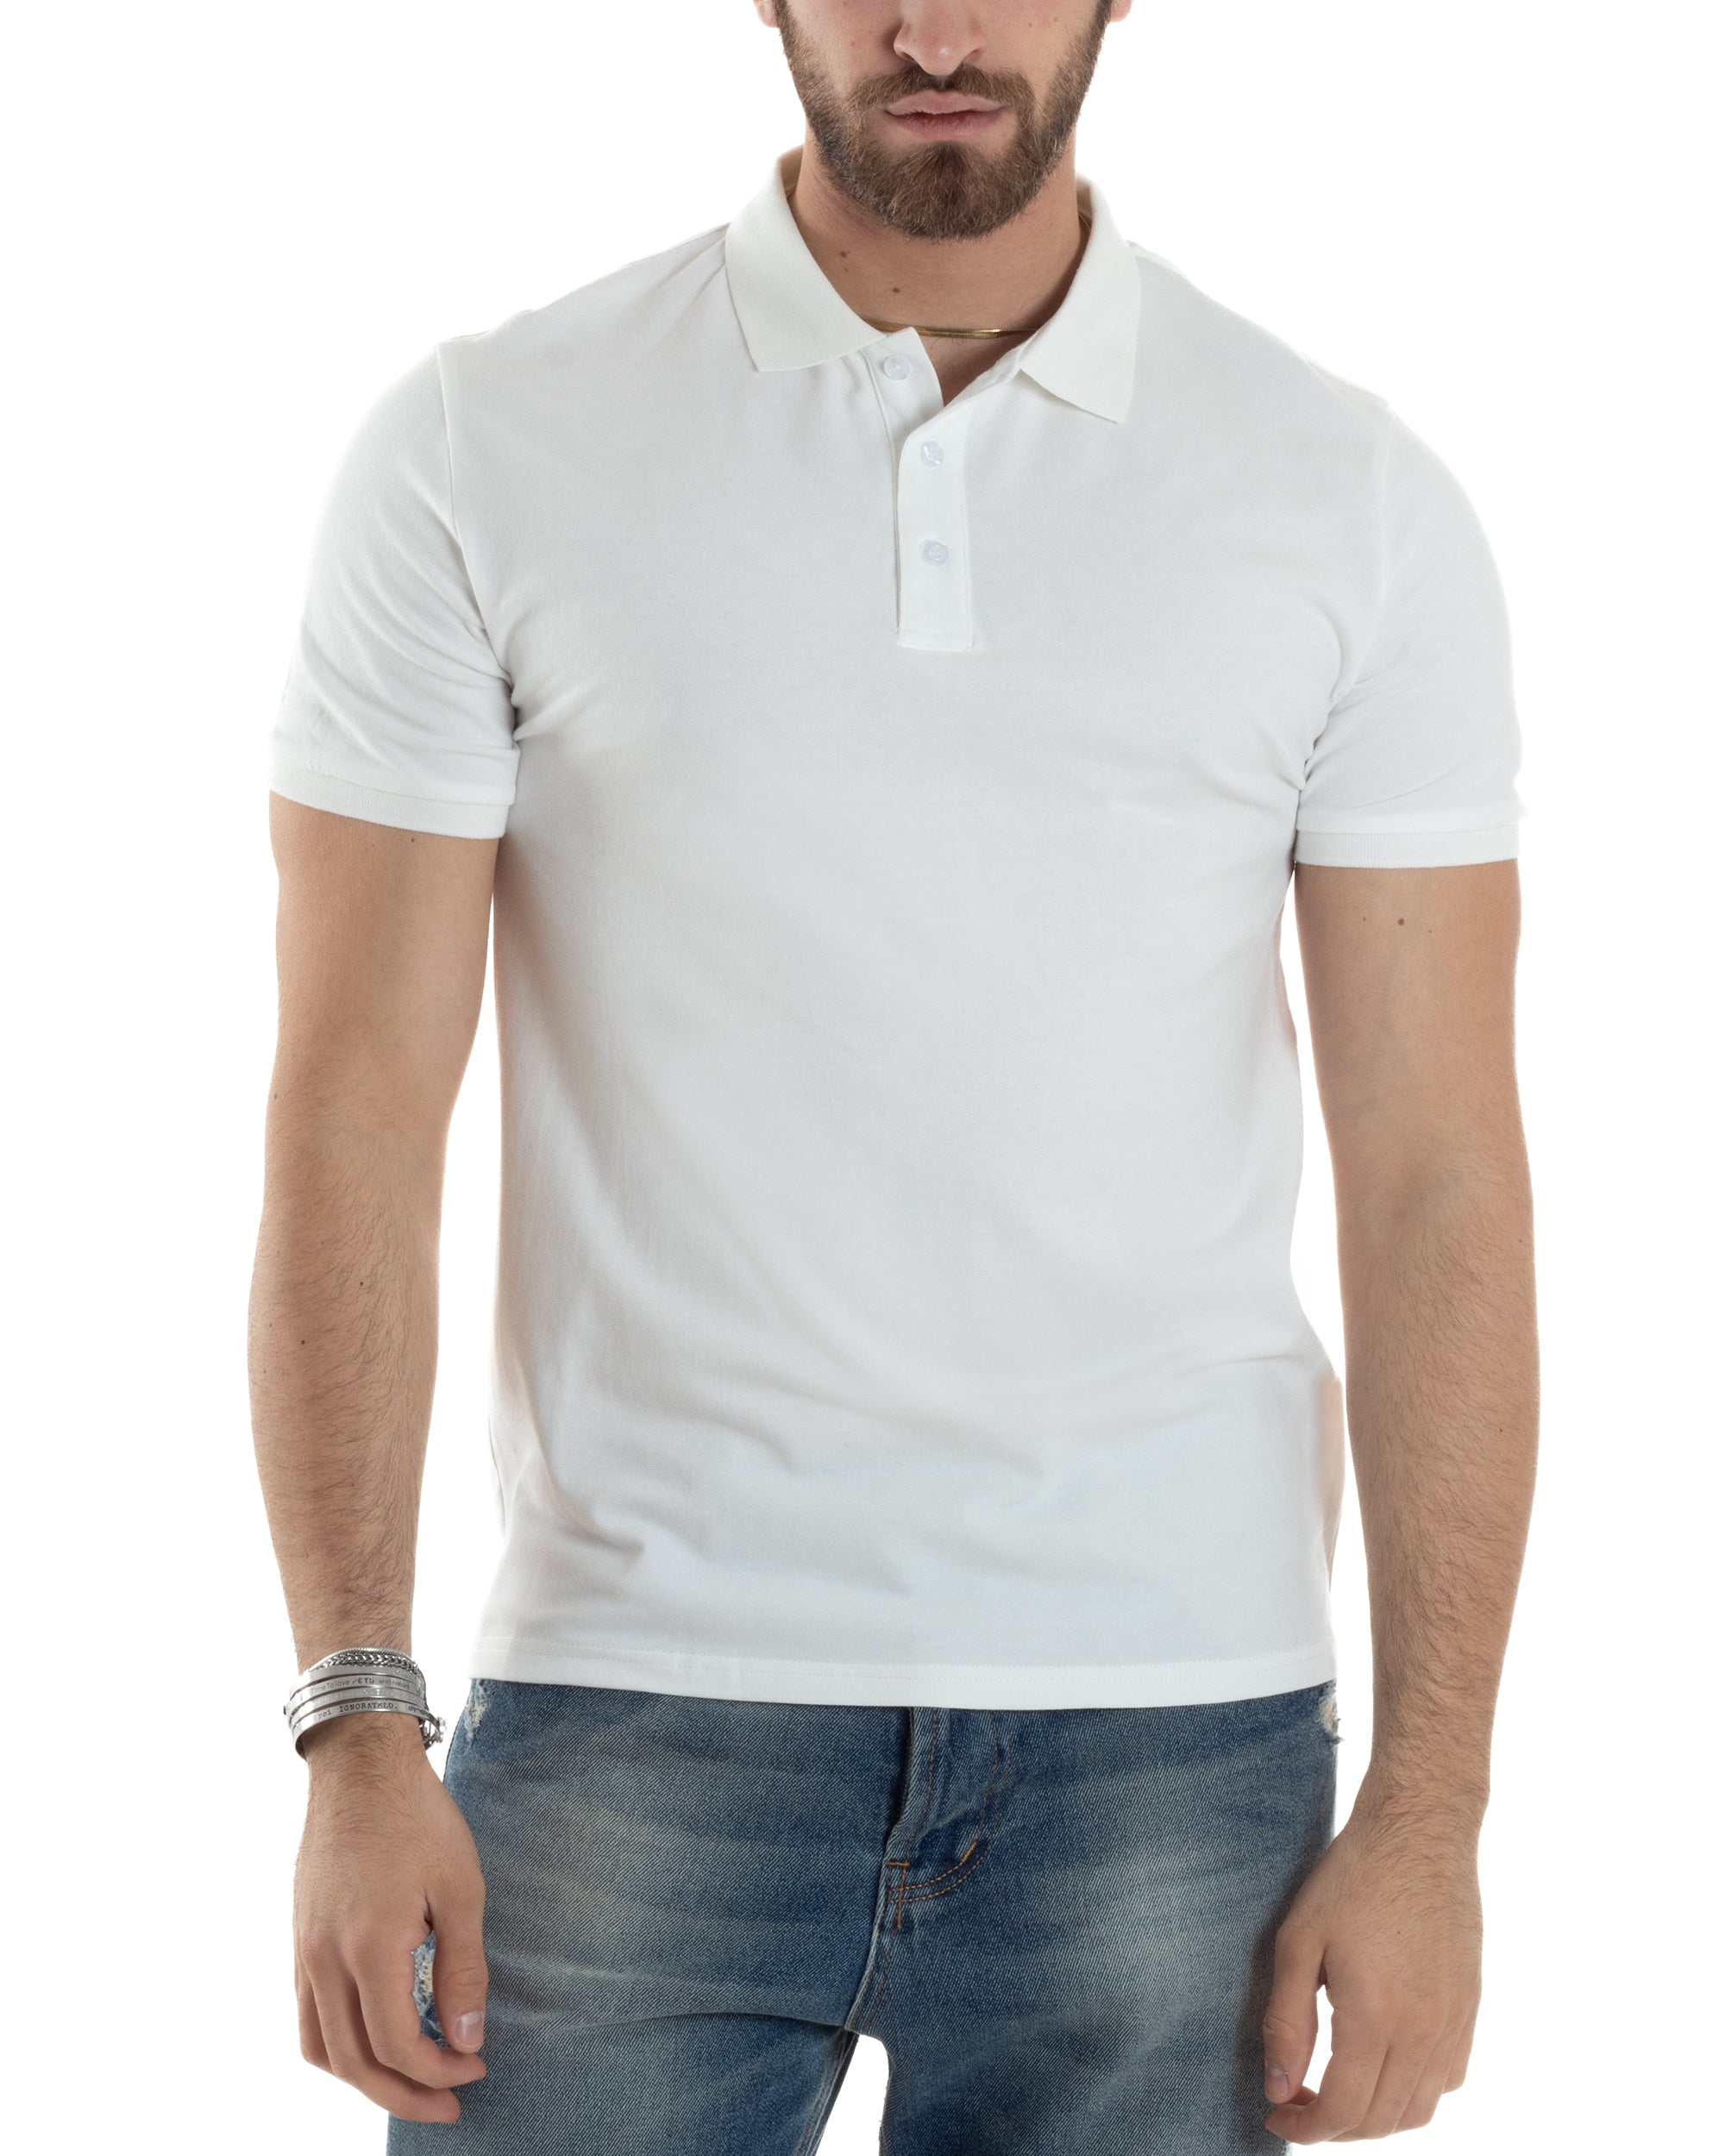 Polo Uomo Manica Corta T-shirt Con Colletto Bottoncini Basic Slim Fit Casual Tinta Unita Bianco GIOSAL-TS3047A